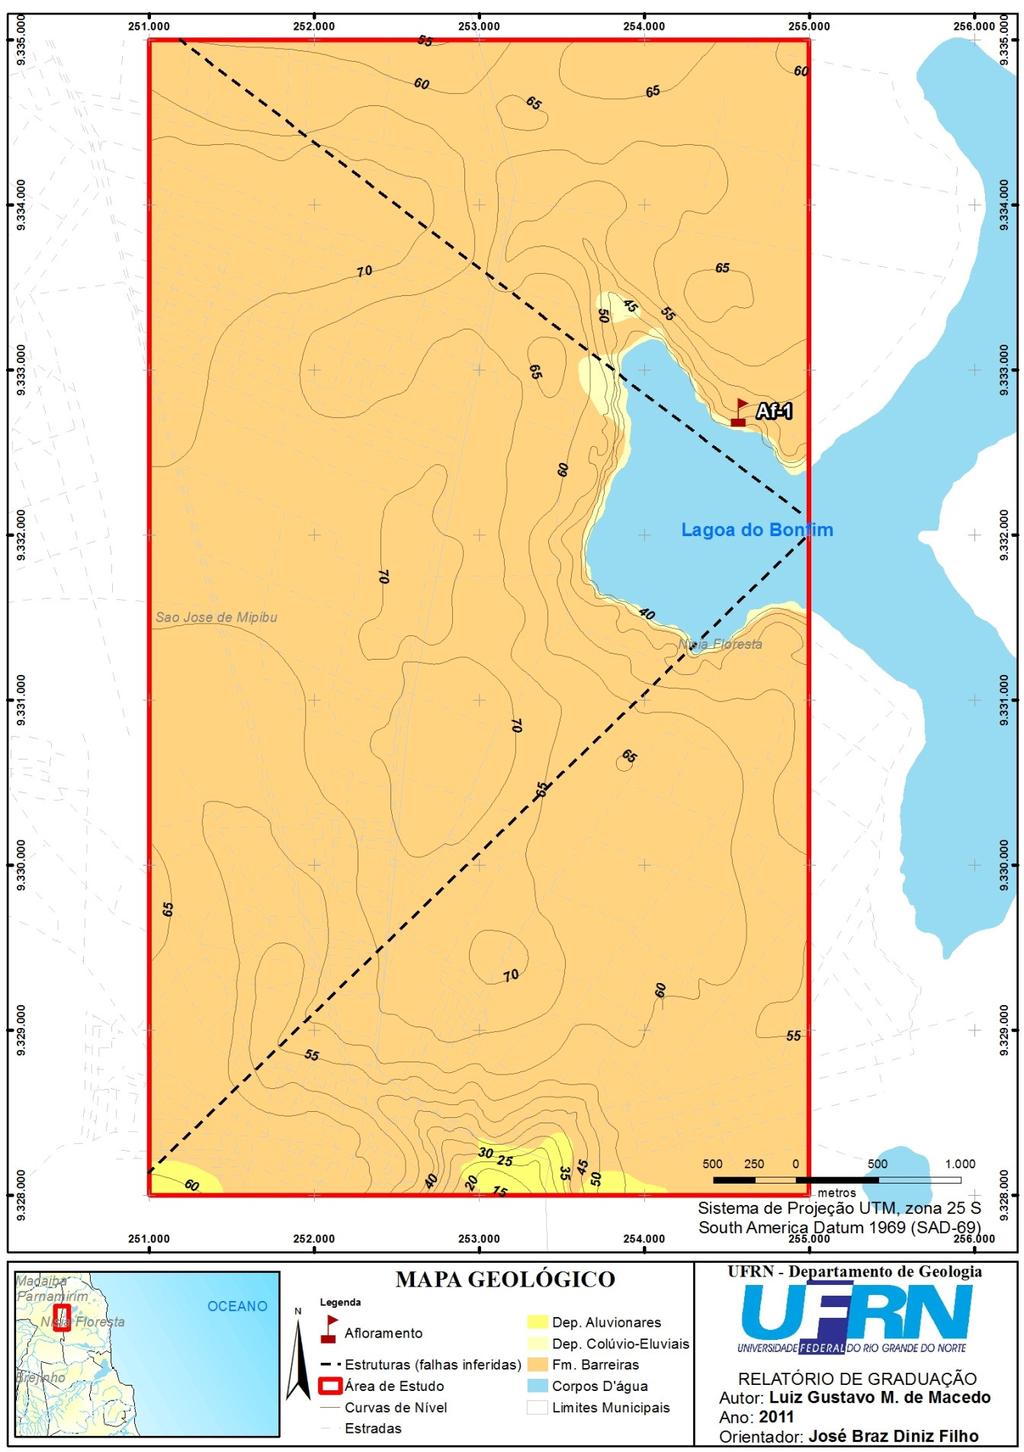 Figura 0: Mapa geológico da área estudada, a oeste da Lagoa do Bonfim/Nísia Floresta-RN. (MACEDO, 20).